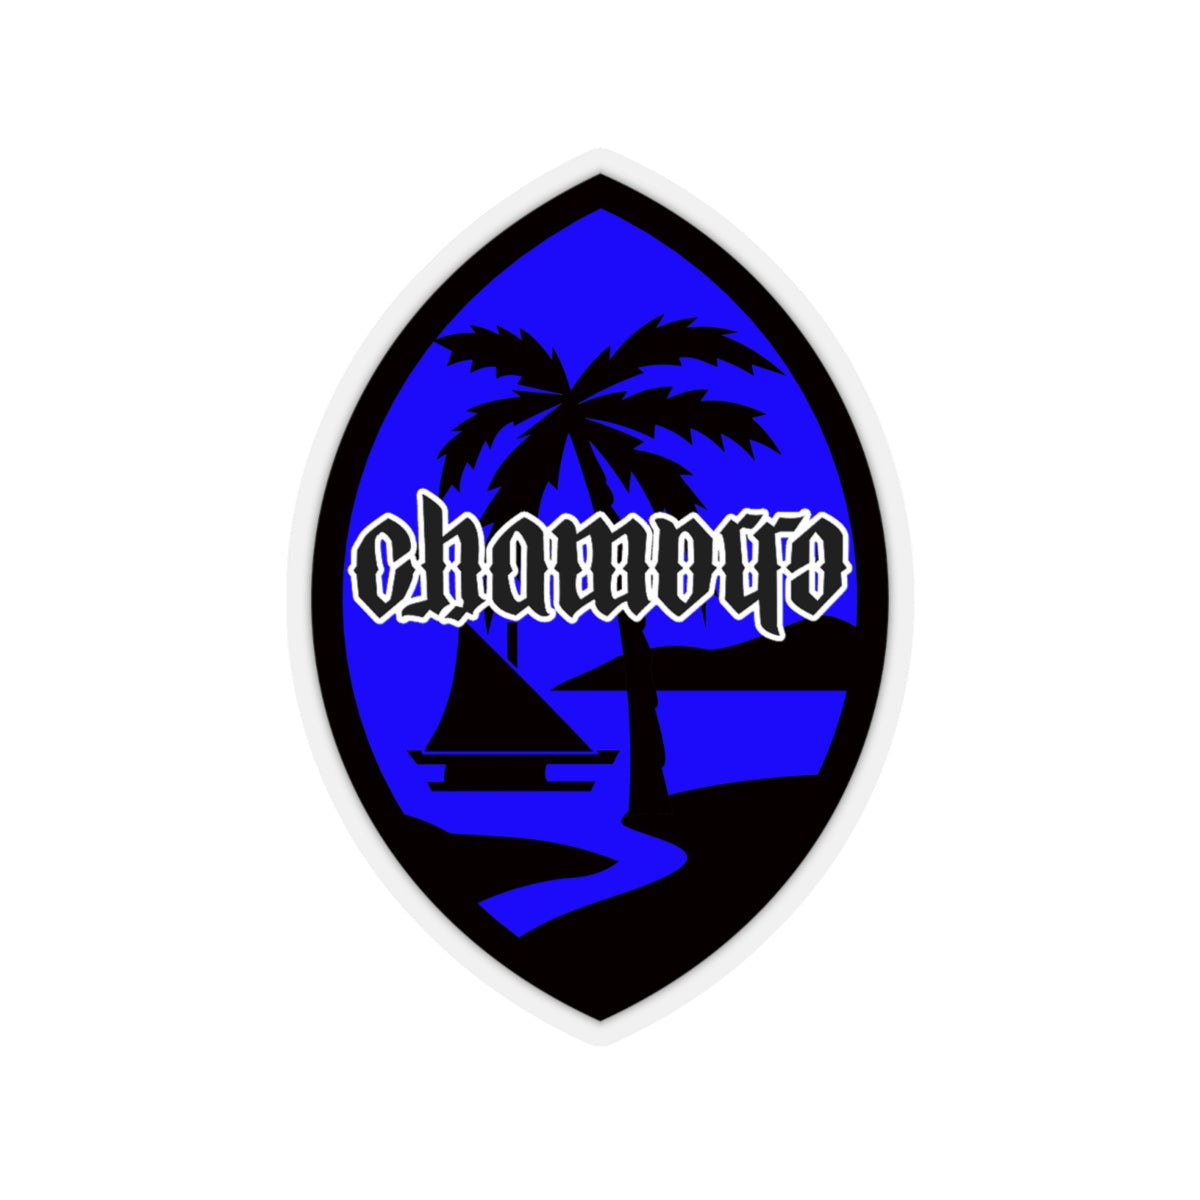 Chamorro Blue Decal